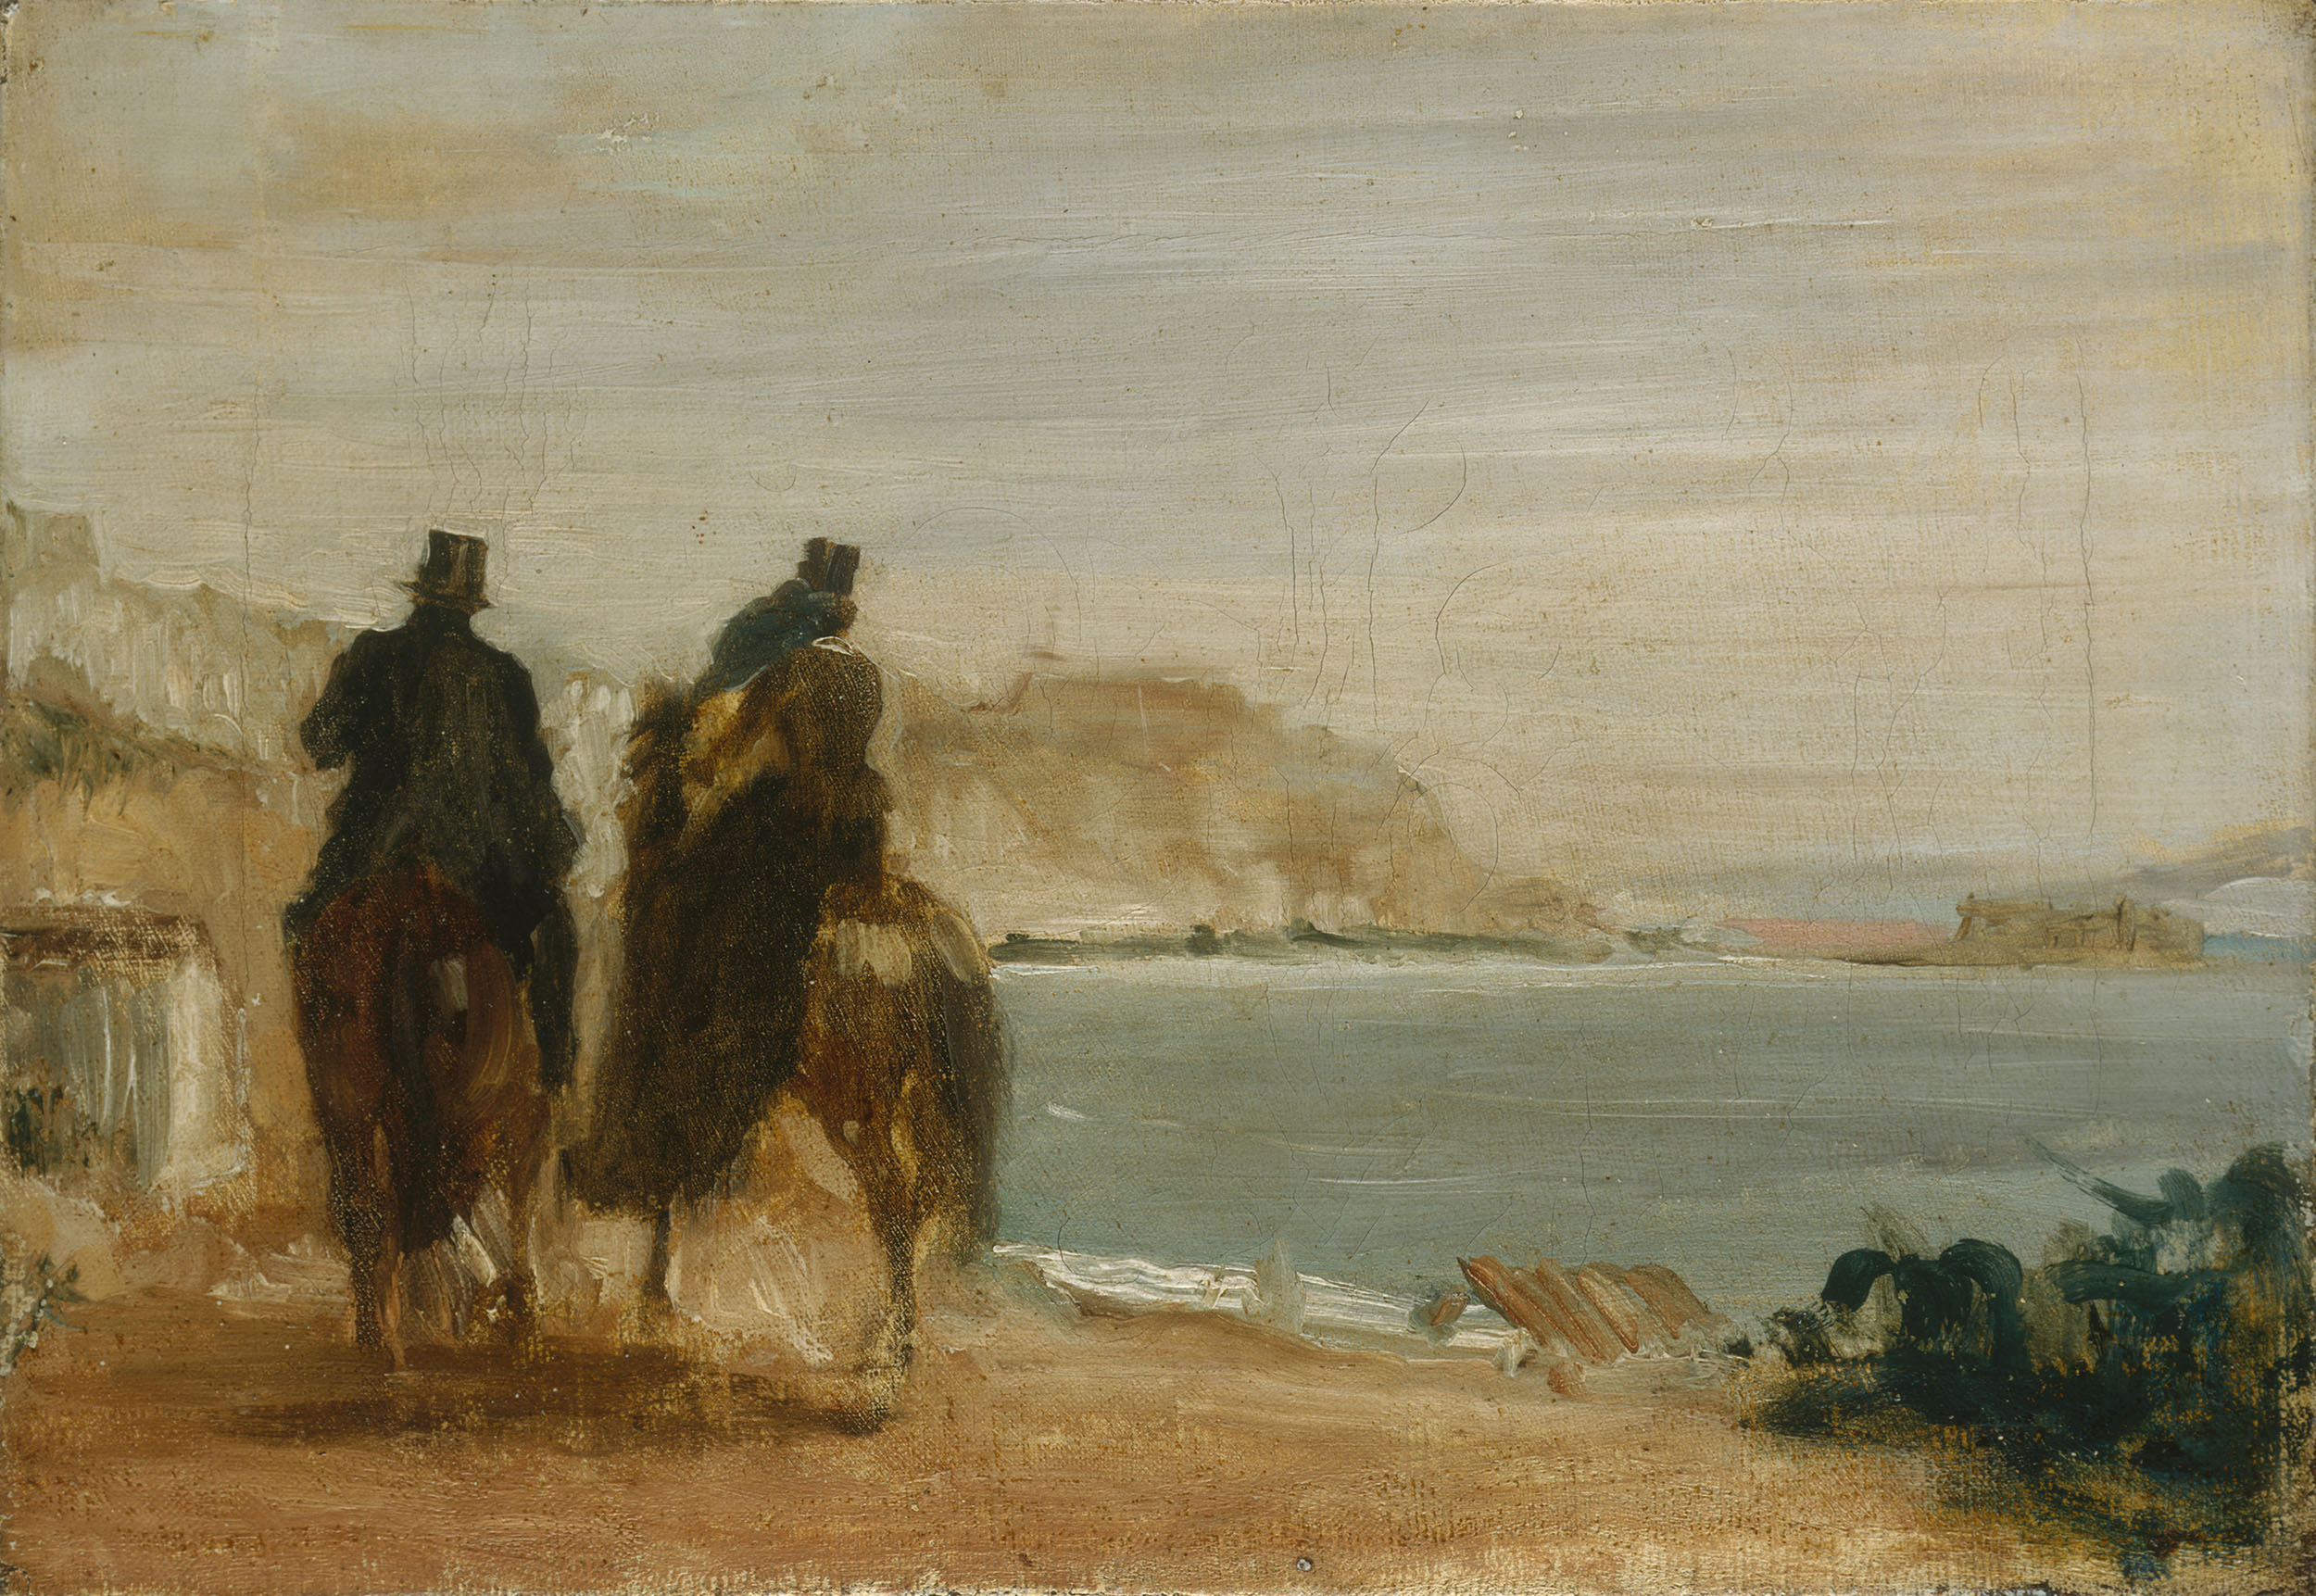 Эдгар Дега. Набережная рядом с морем. Около 1860.